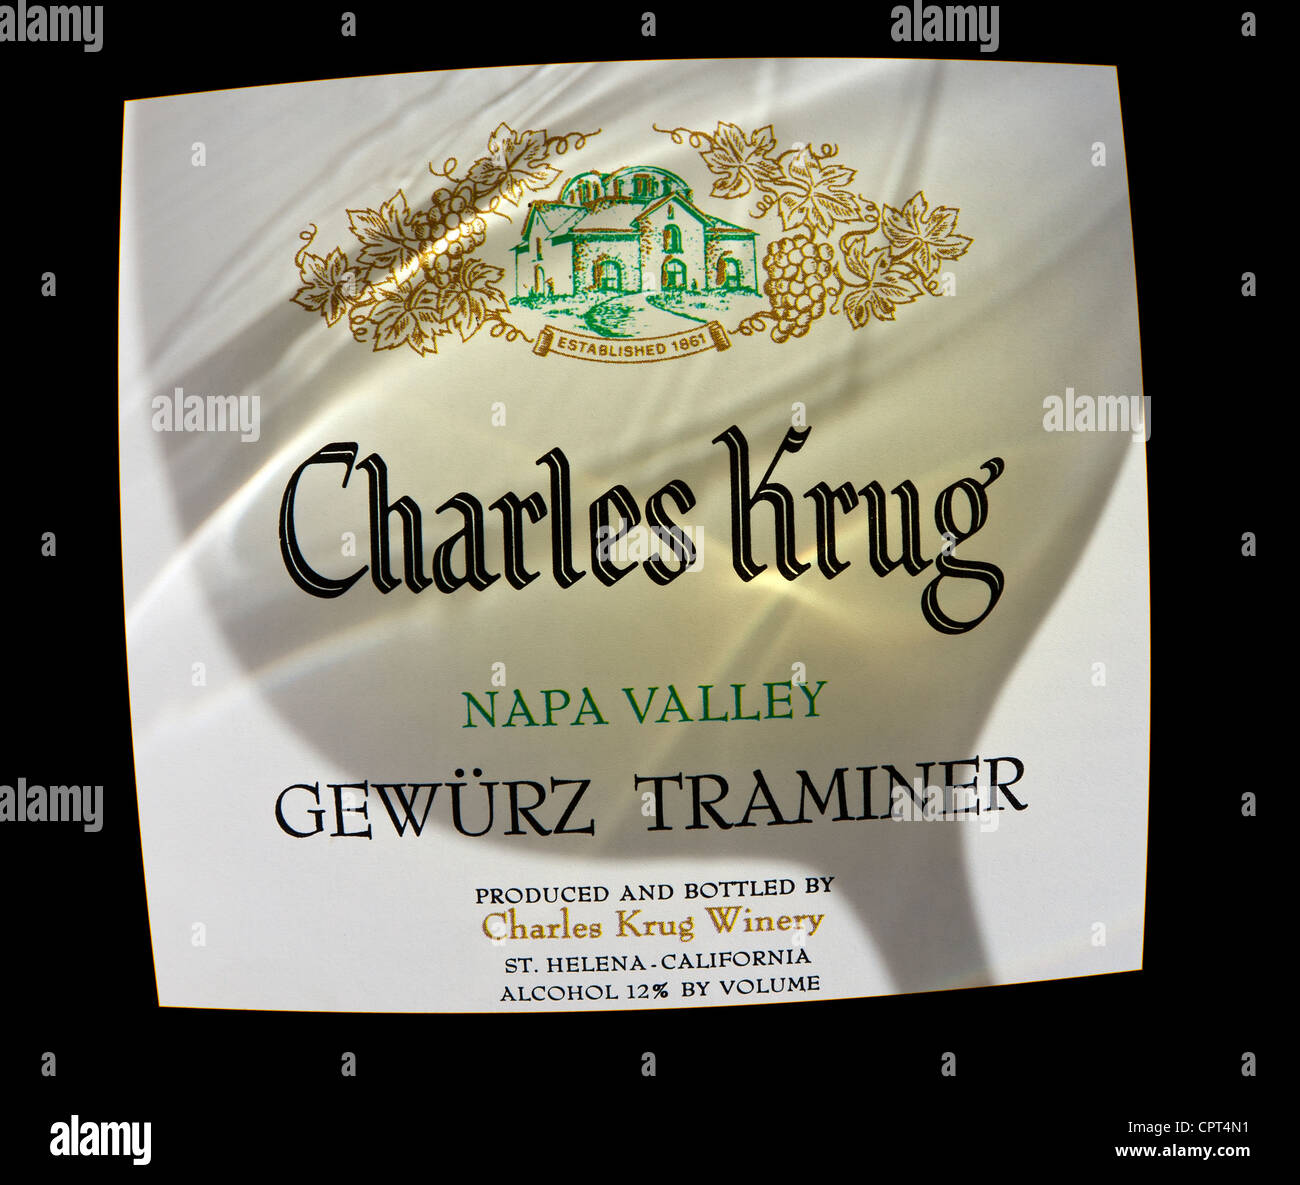 Charles Krug gewürz etichetta in bottiglia della Napa Valley, con l'ombra del vino che roteava in un bicchiere da degustazione Foto Stock